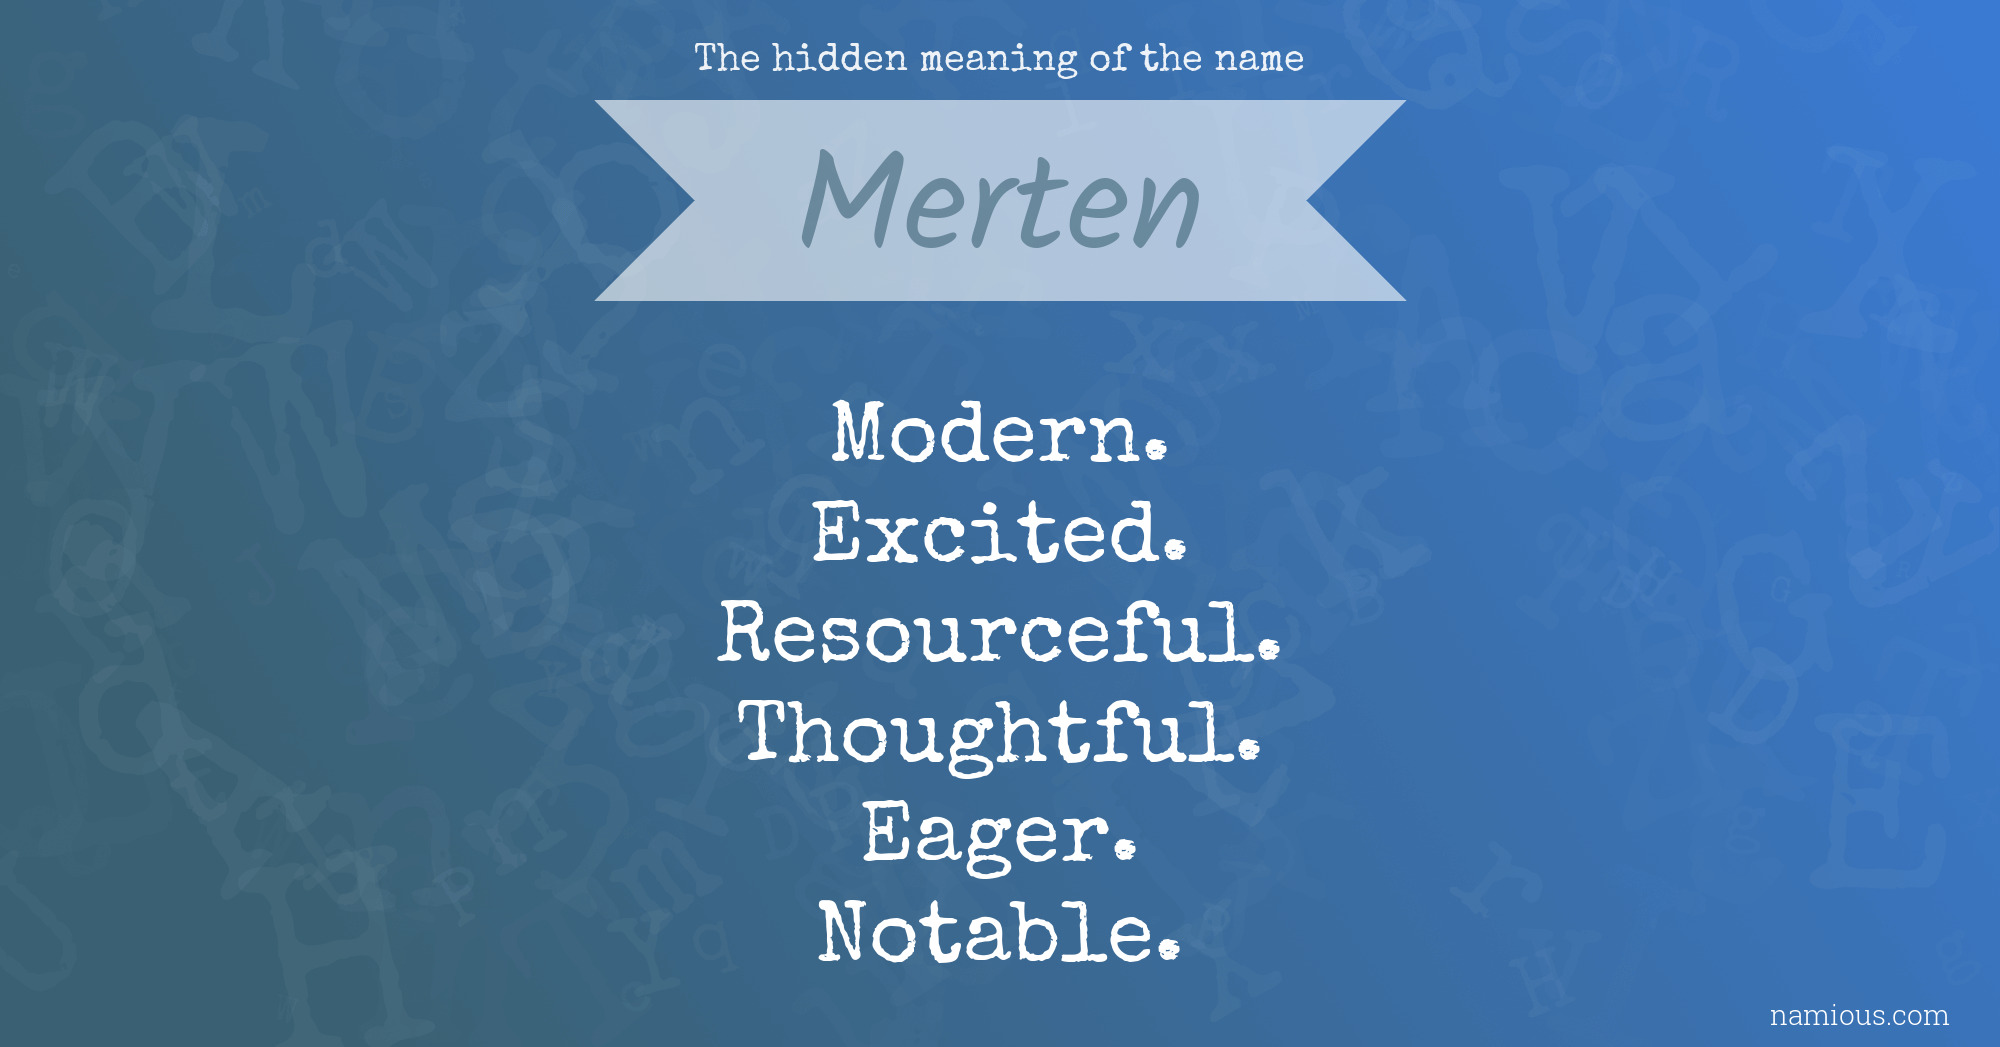 The hidden meaning of the name Merten